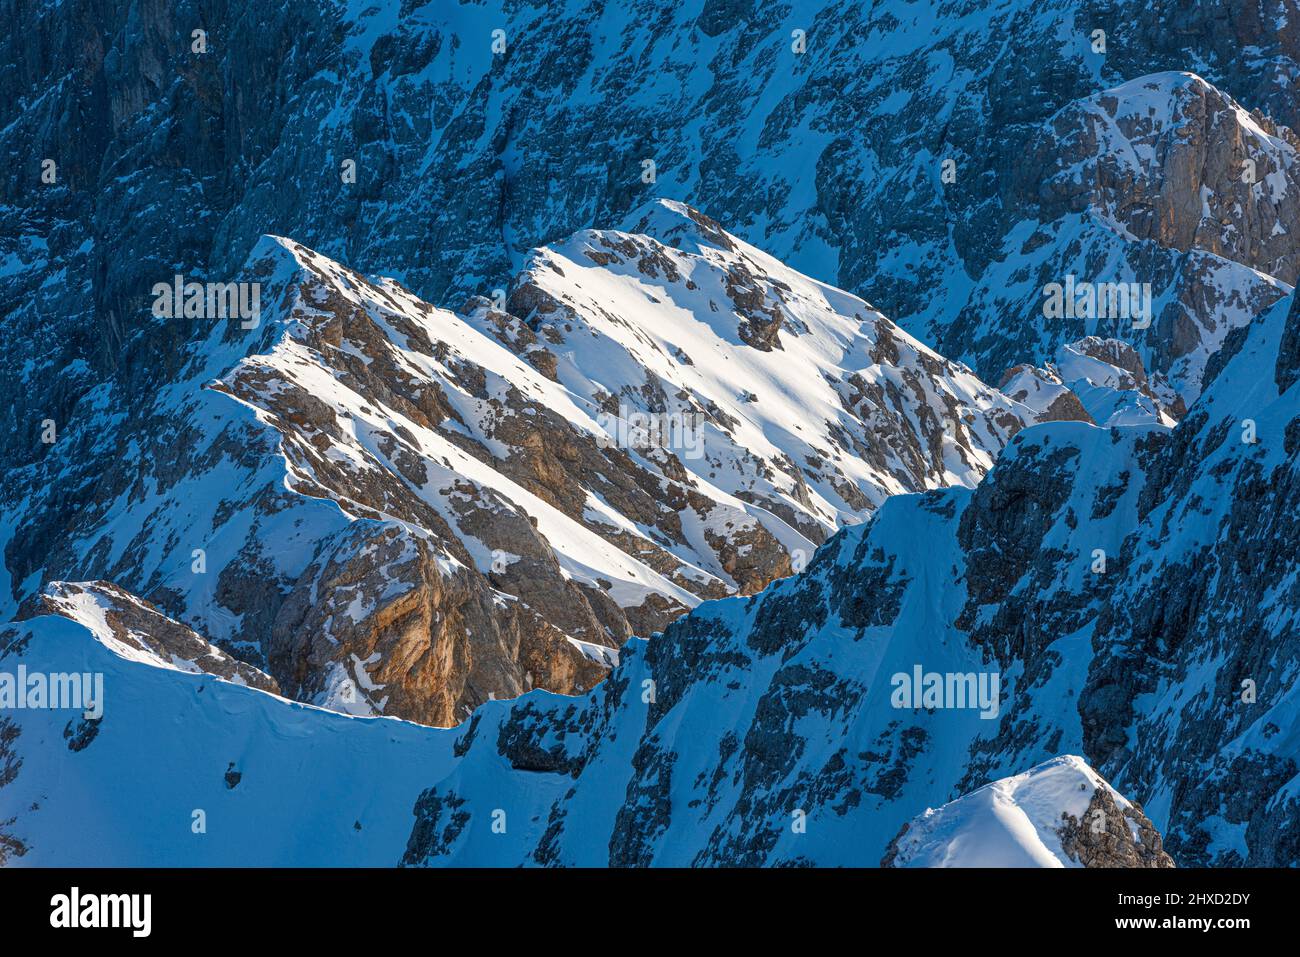 Mattina sulla Zugspitze, alba sulla montagna più alta della Germania 'Top of Germany'. Fotografia di paesaggio. Foto Stock